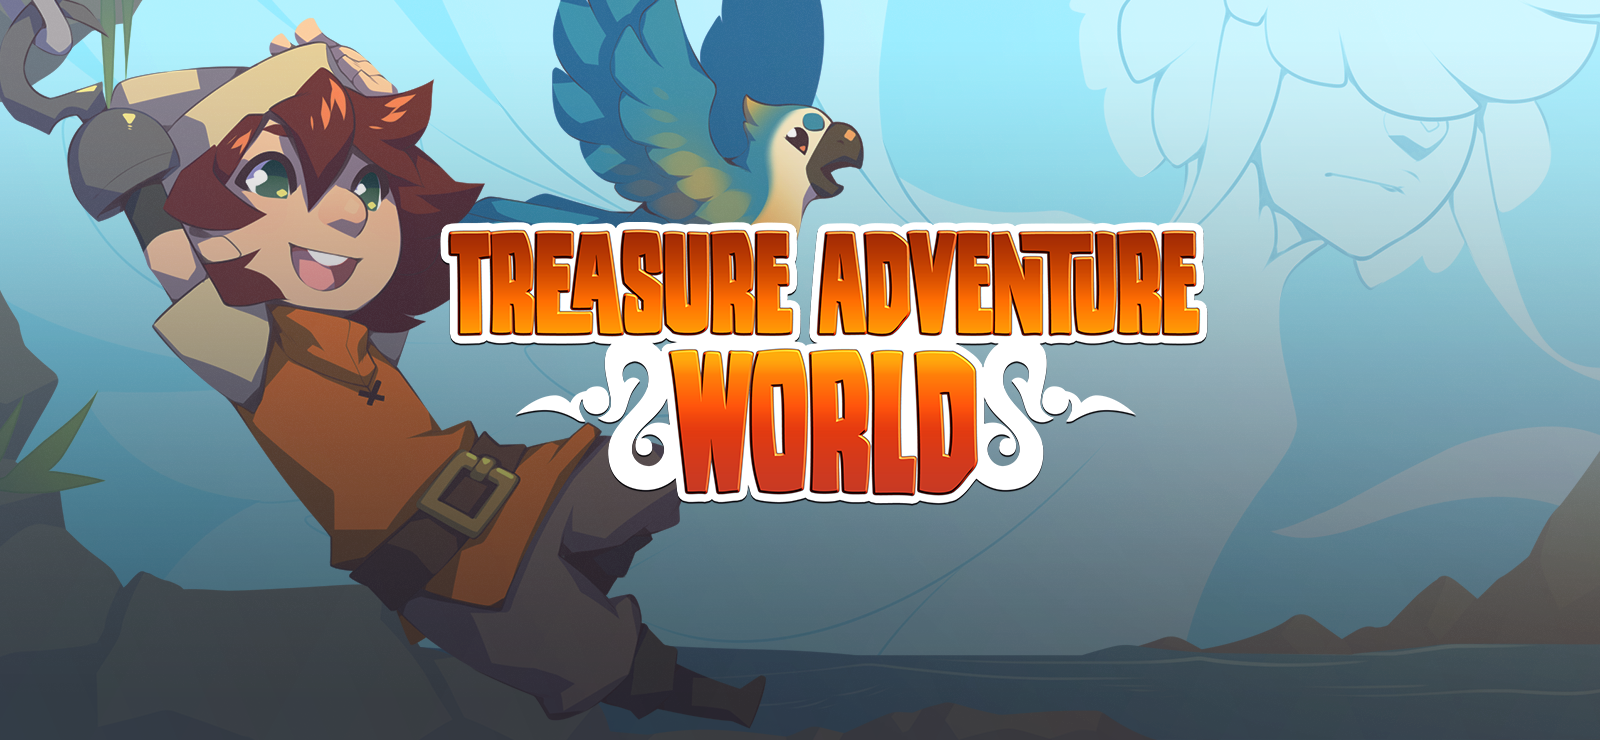 Treasure Adventure World Pre-Order